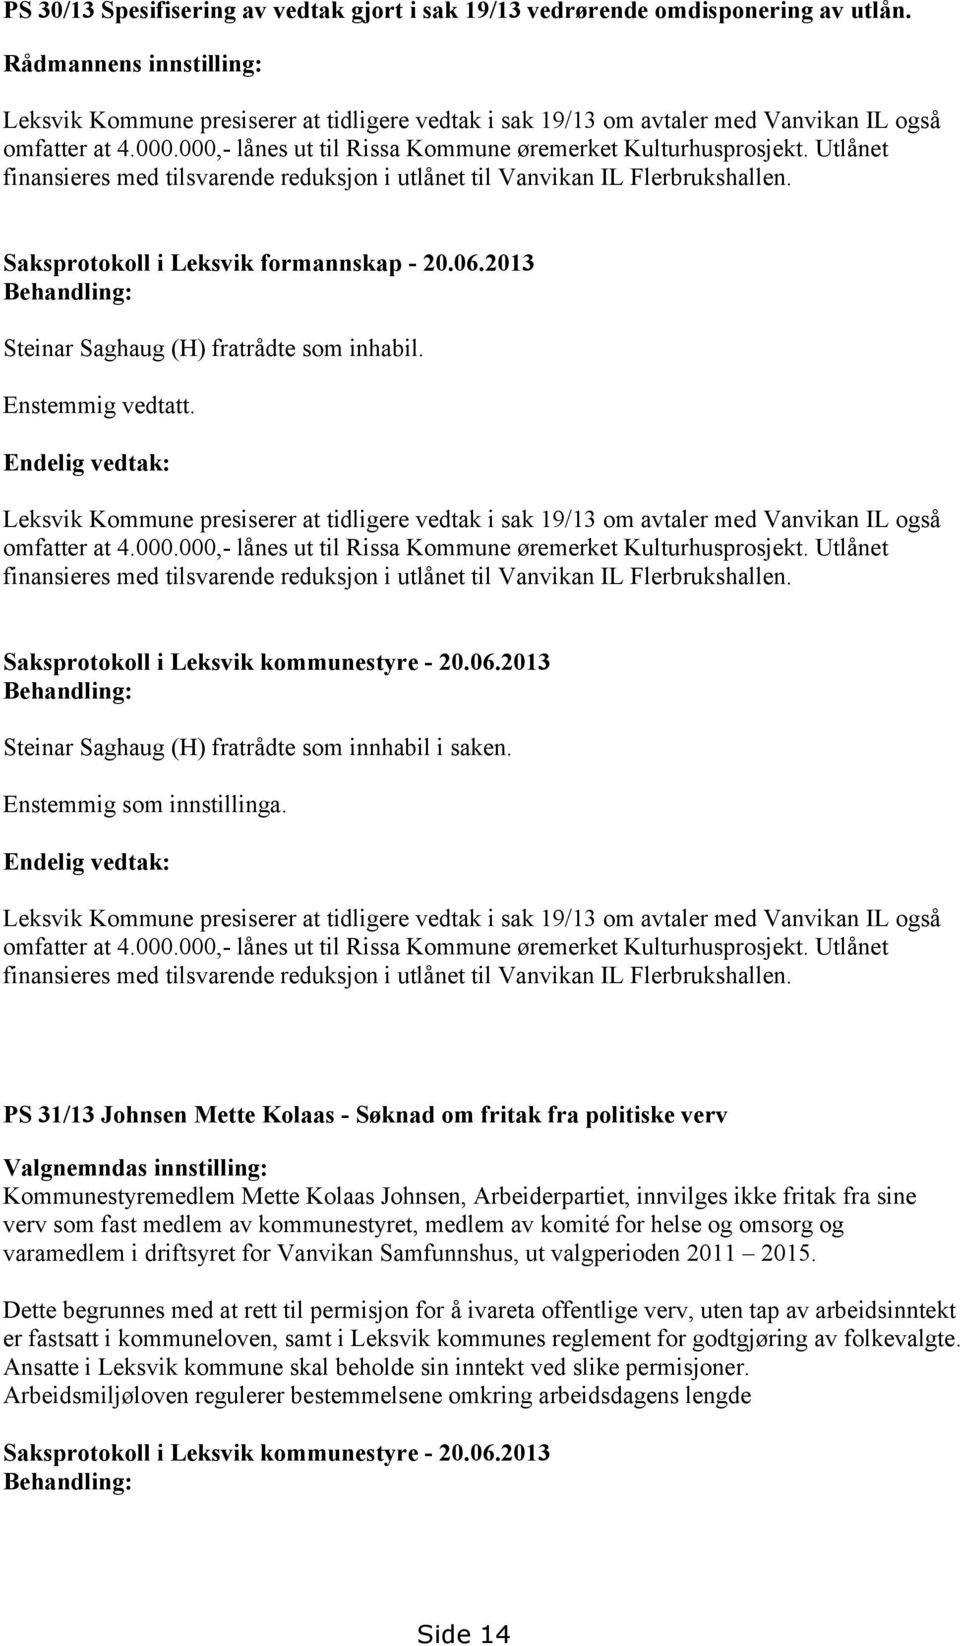 Utlånet finansieres med tilsvarende reduksjon i utlånet til Vanvikan IL Flerbrukshallen. Saksprotokoll i Leksvik formannskap - 20.06.2013 Steinar Saghaug (H) fratrådte som inhabil. Enstemmig vedtatt.